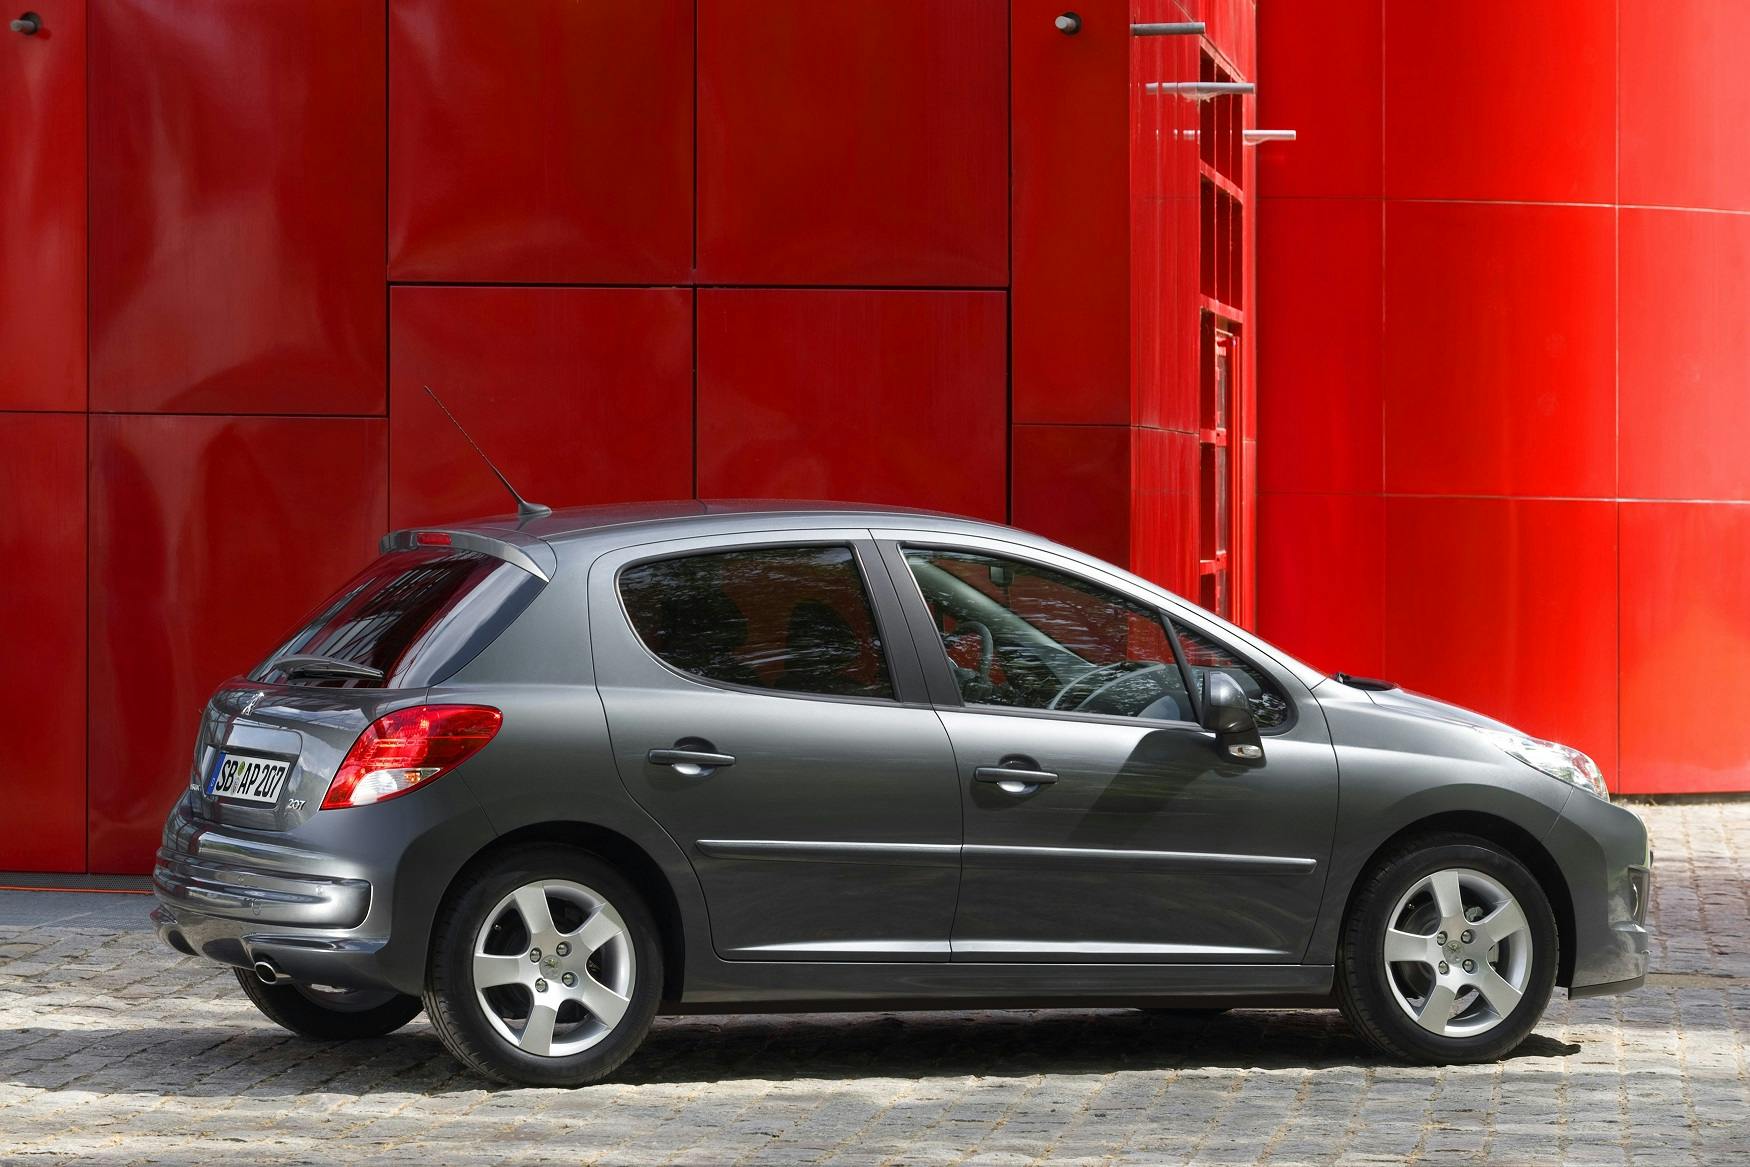 Peugeot 207 - Kaufberatung: Für Peugeot eine ganz große Nummer